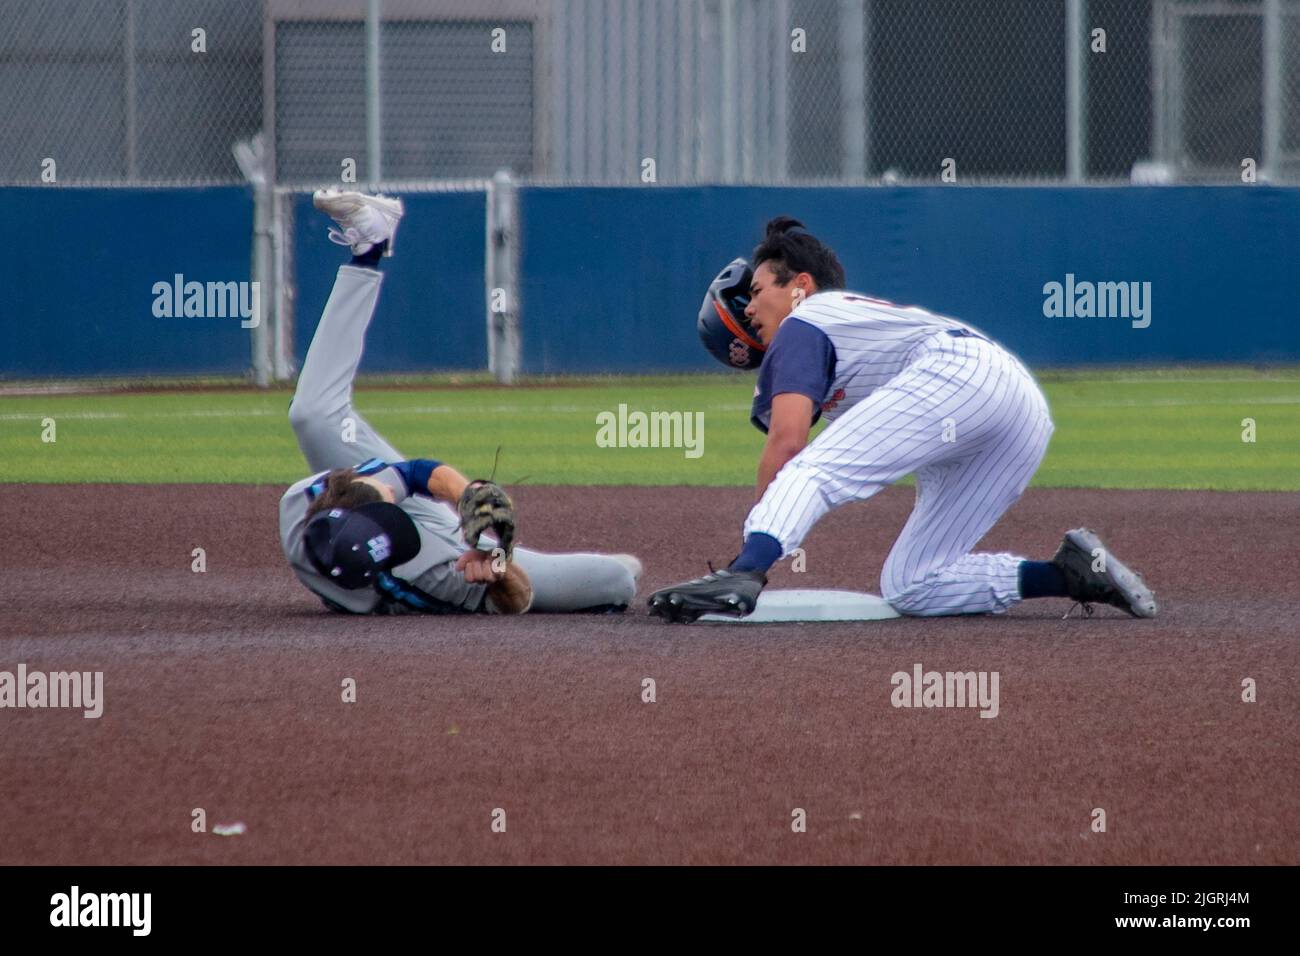 Ein College-Baseballspieler rutscht beim Versuch, zu stehlen, in die zweite Basis, während der zweite Basisspieler den Ball in seinem Baseballhandschuh hält, während er sich überrollt Stockfoto